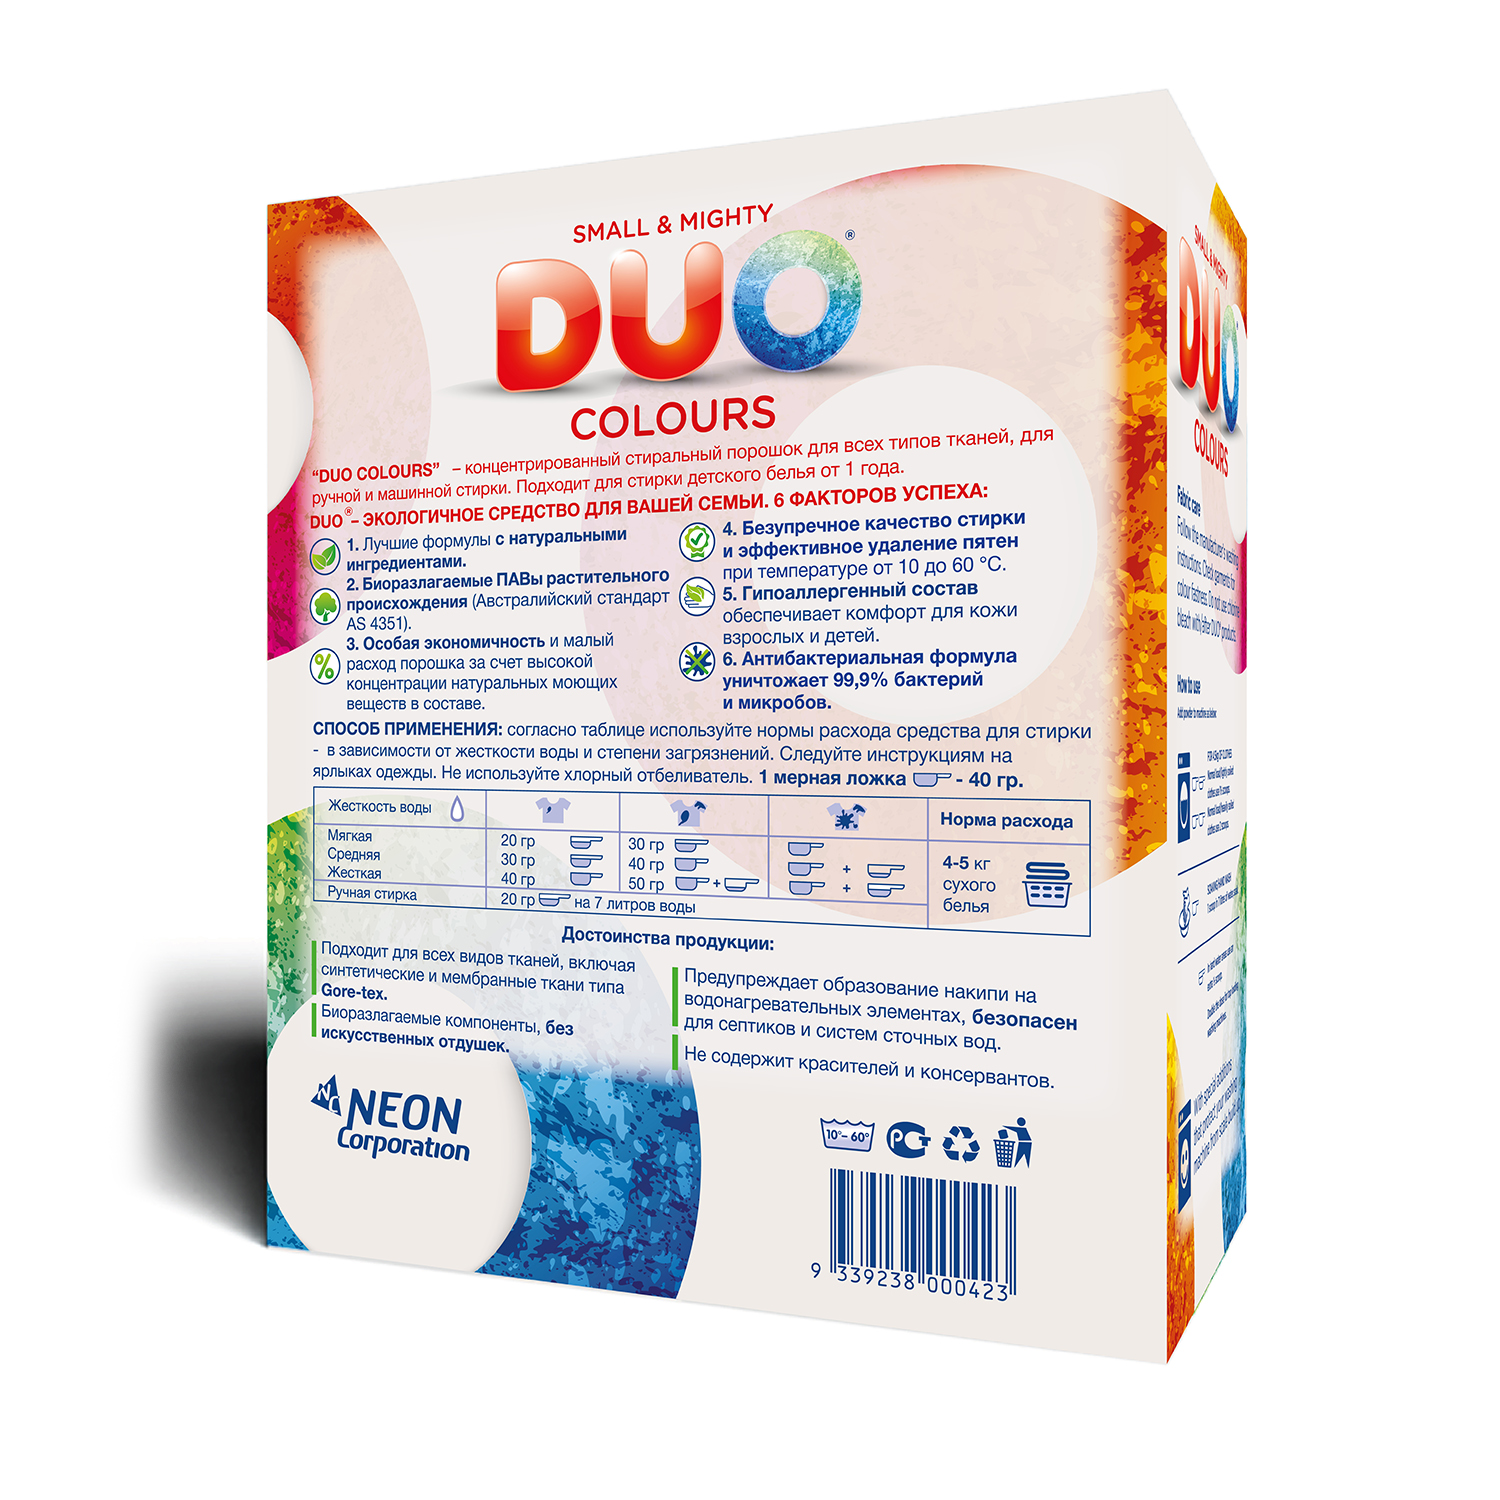 Стиральный порошок DUO Colours гипоаллергенный ЭКОлогичный концентрированный для цветного белья 1000 г 35 стирок - фото 6